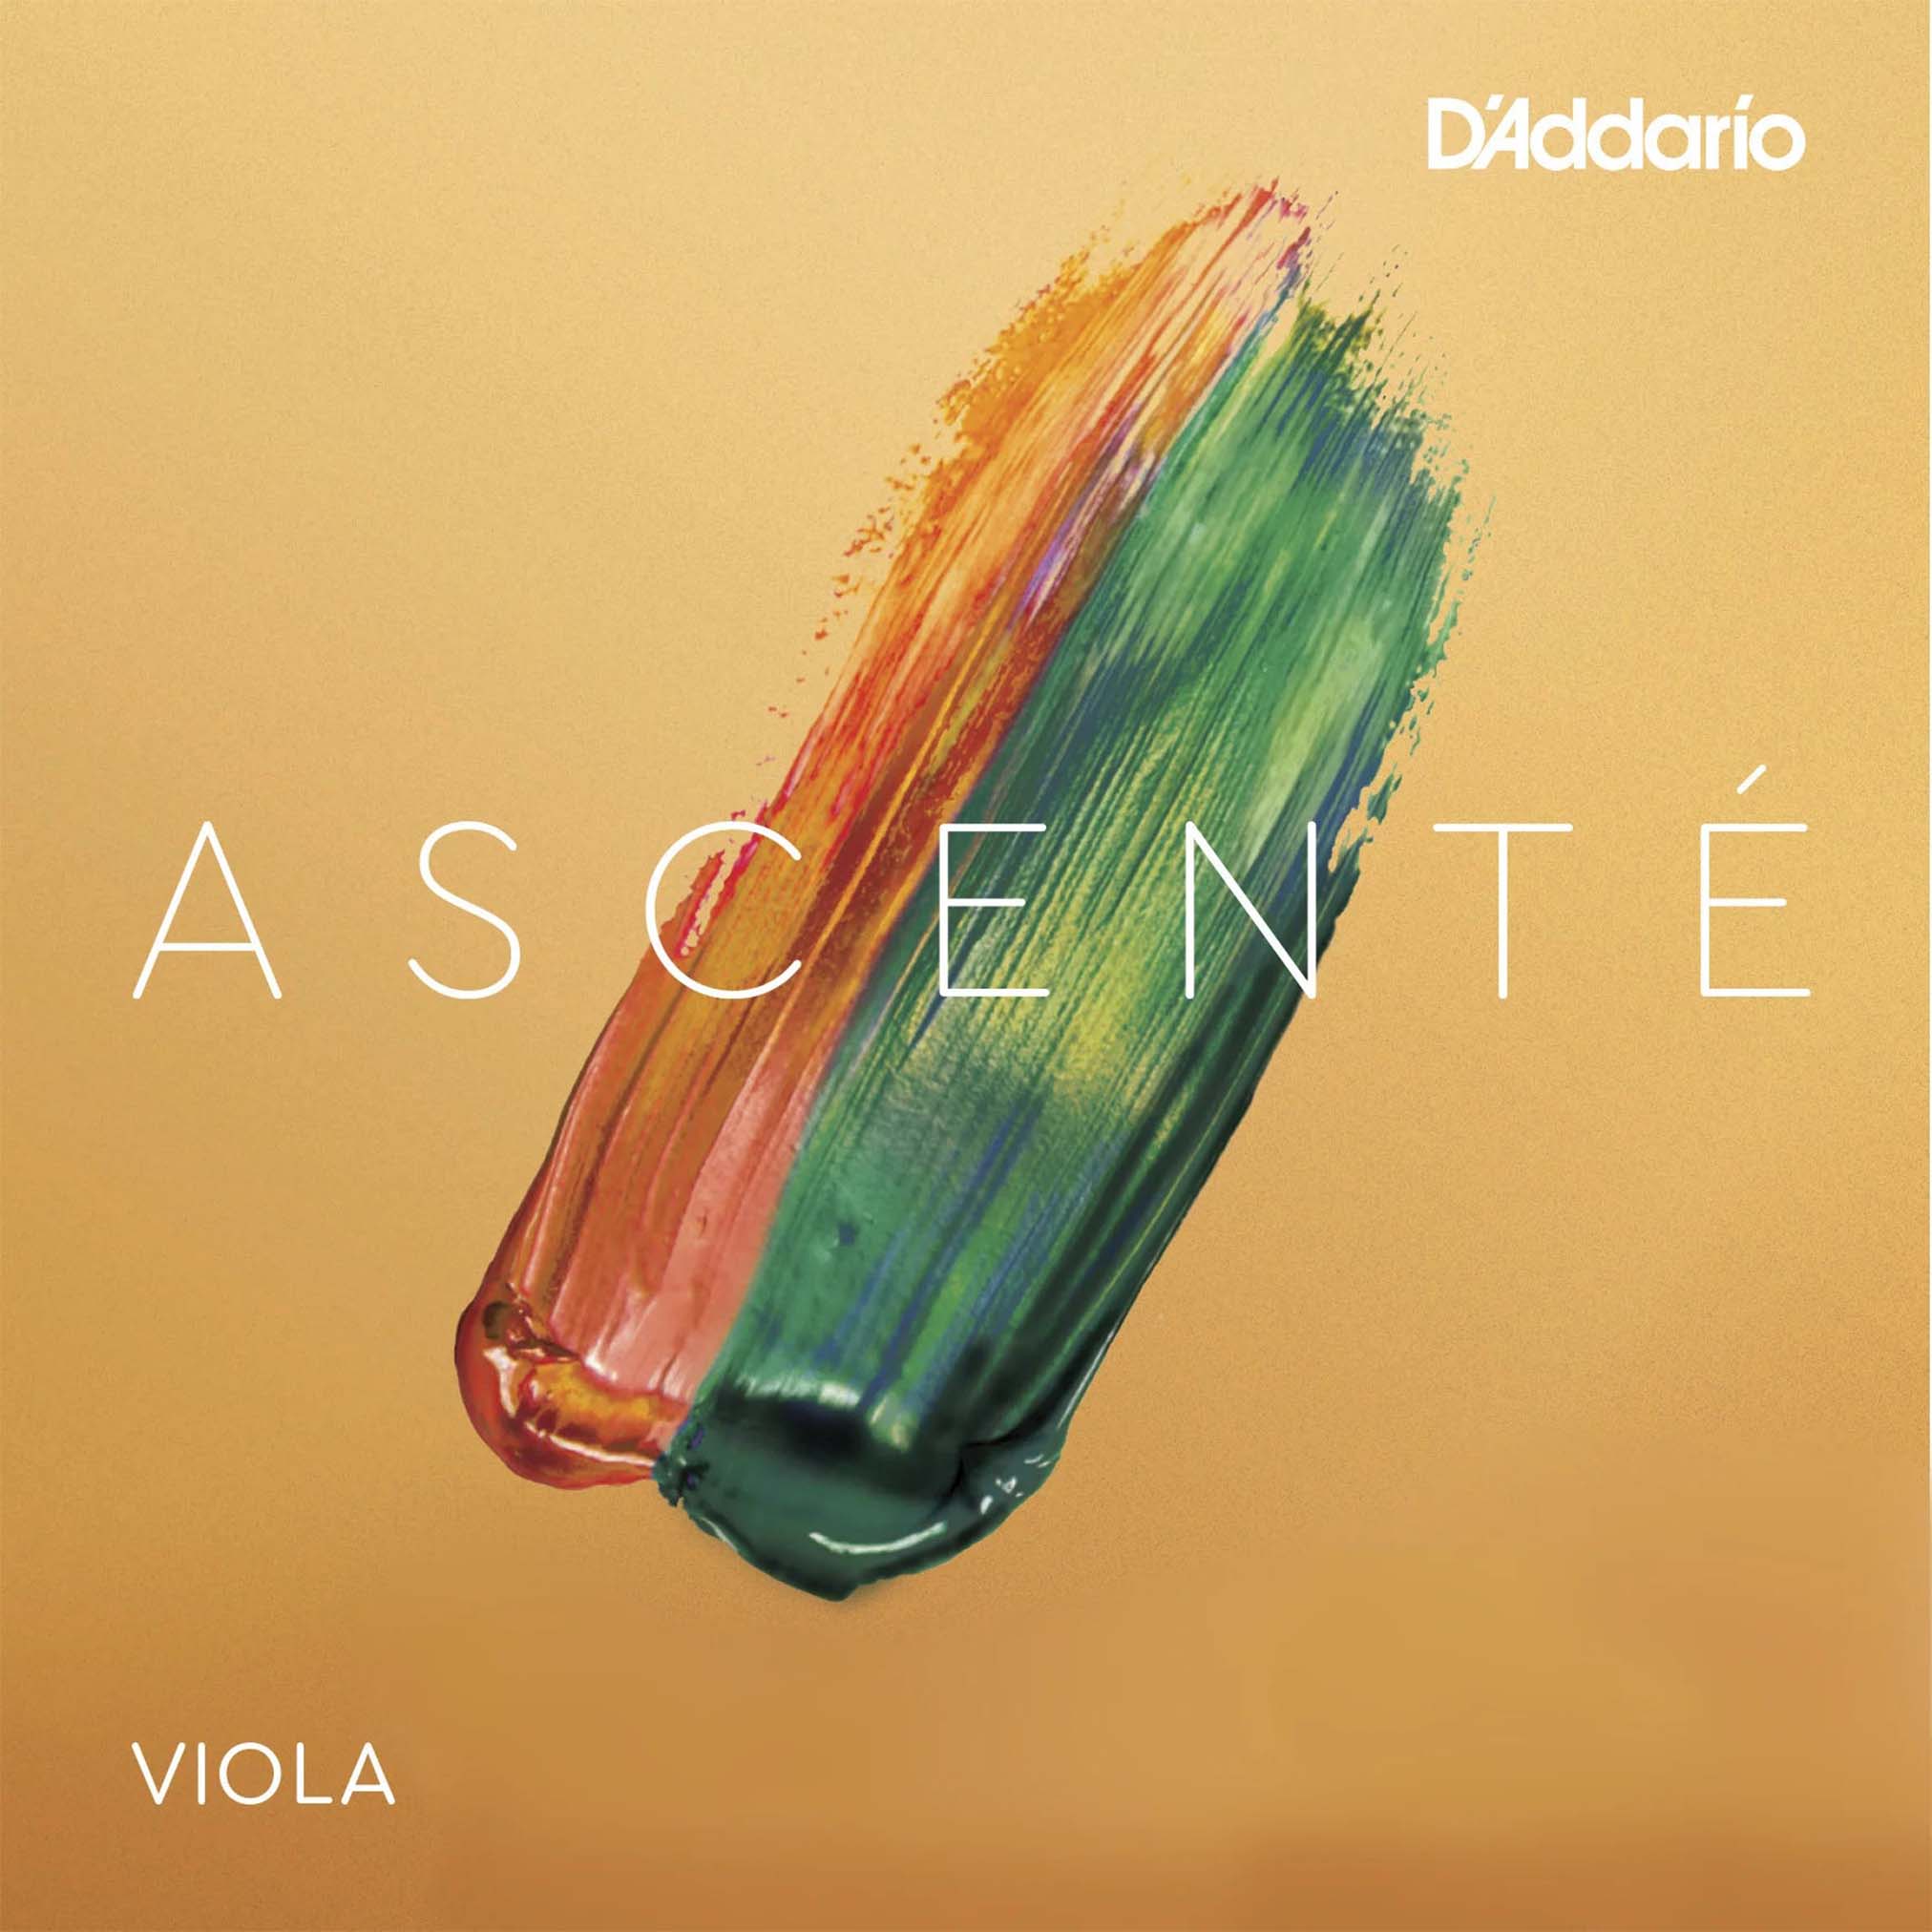 D'addario Ascenté Viola A String